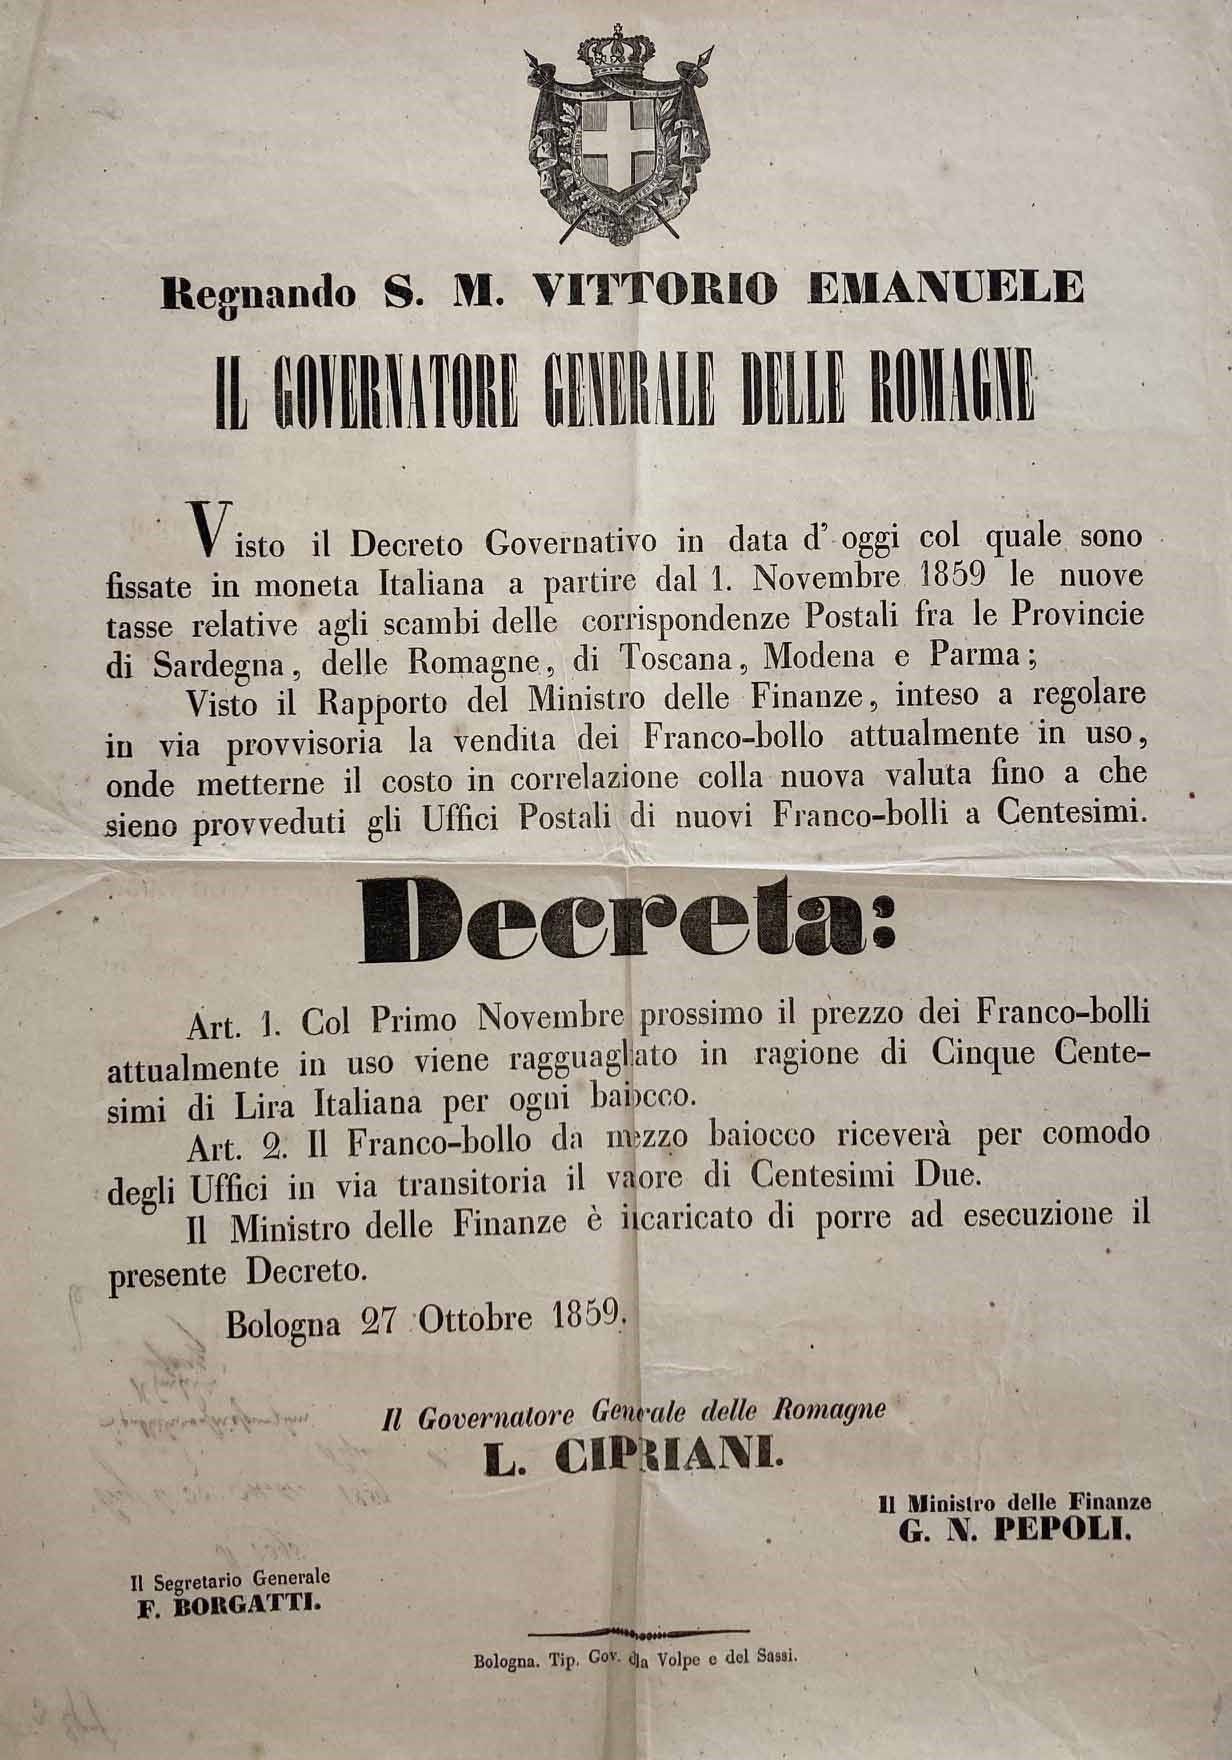 1859, Decreto del Governatore Generale delle Romagne Cipriani, dato in Bologna i&hellip;